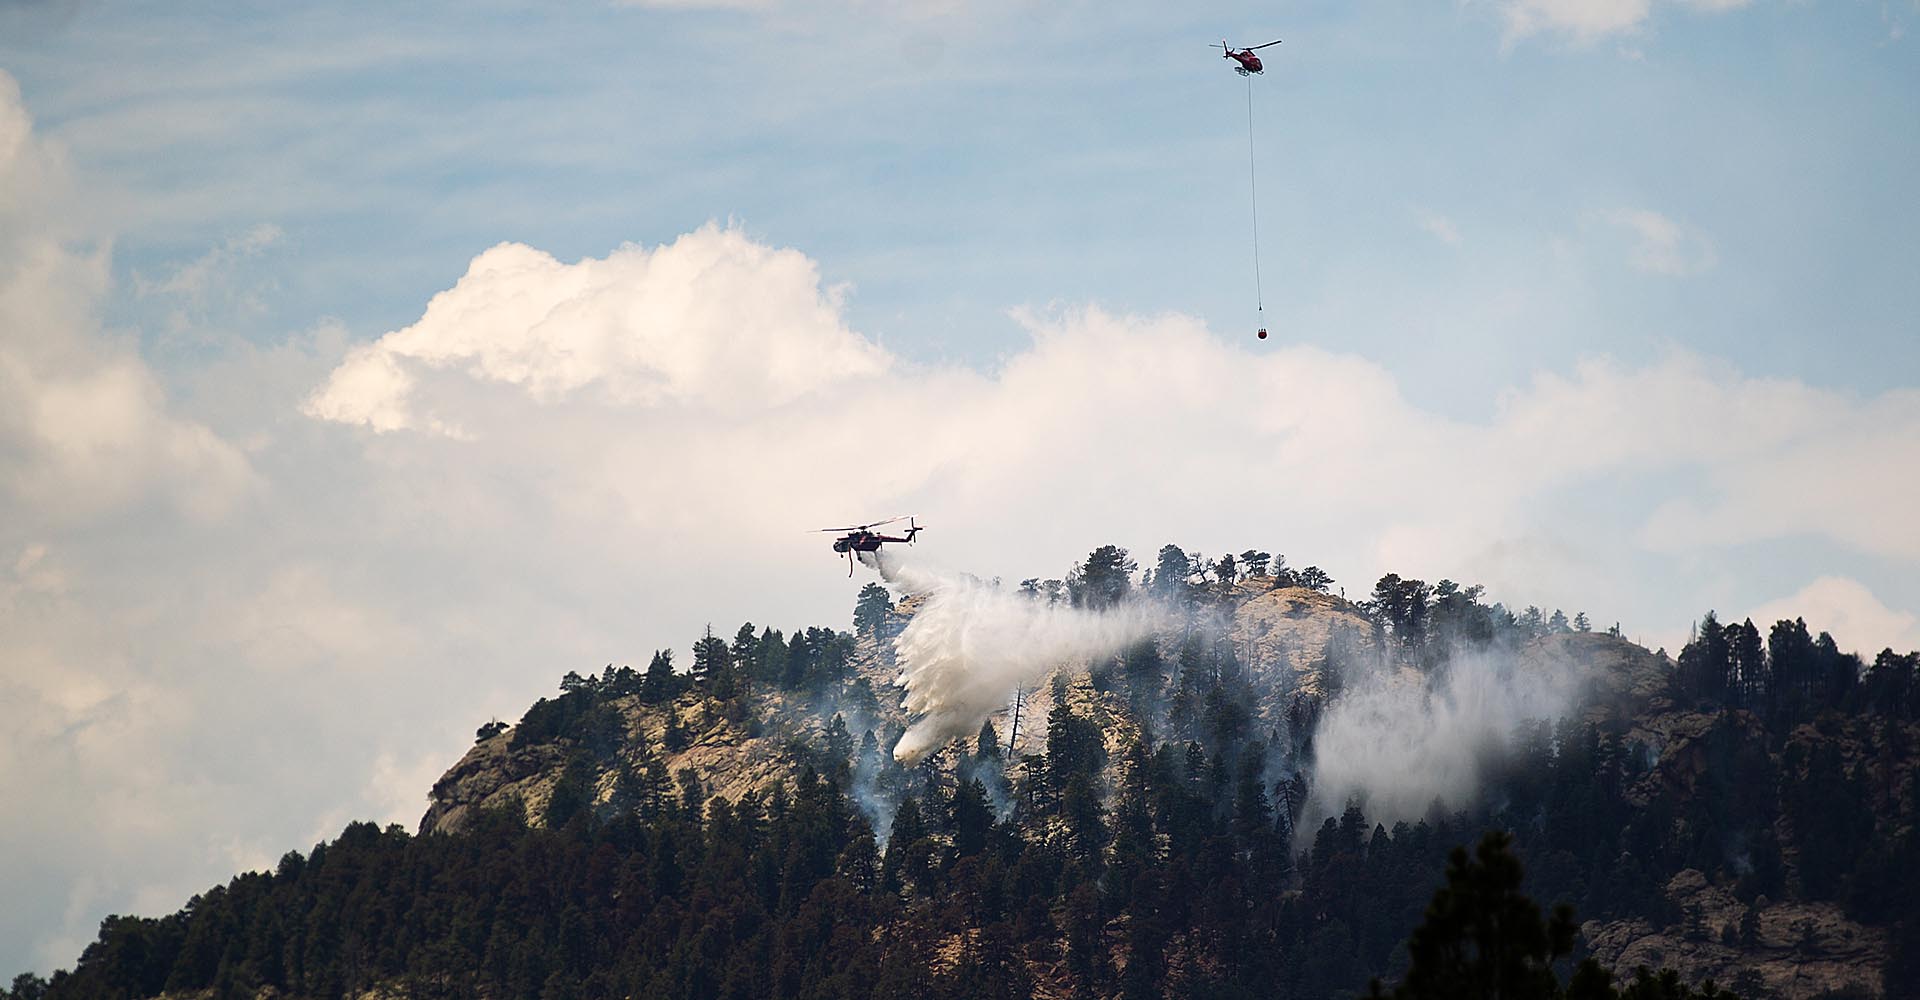 Drought conditions fuel record Colorado wildfires